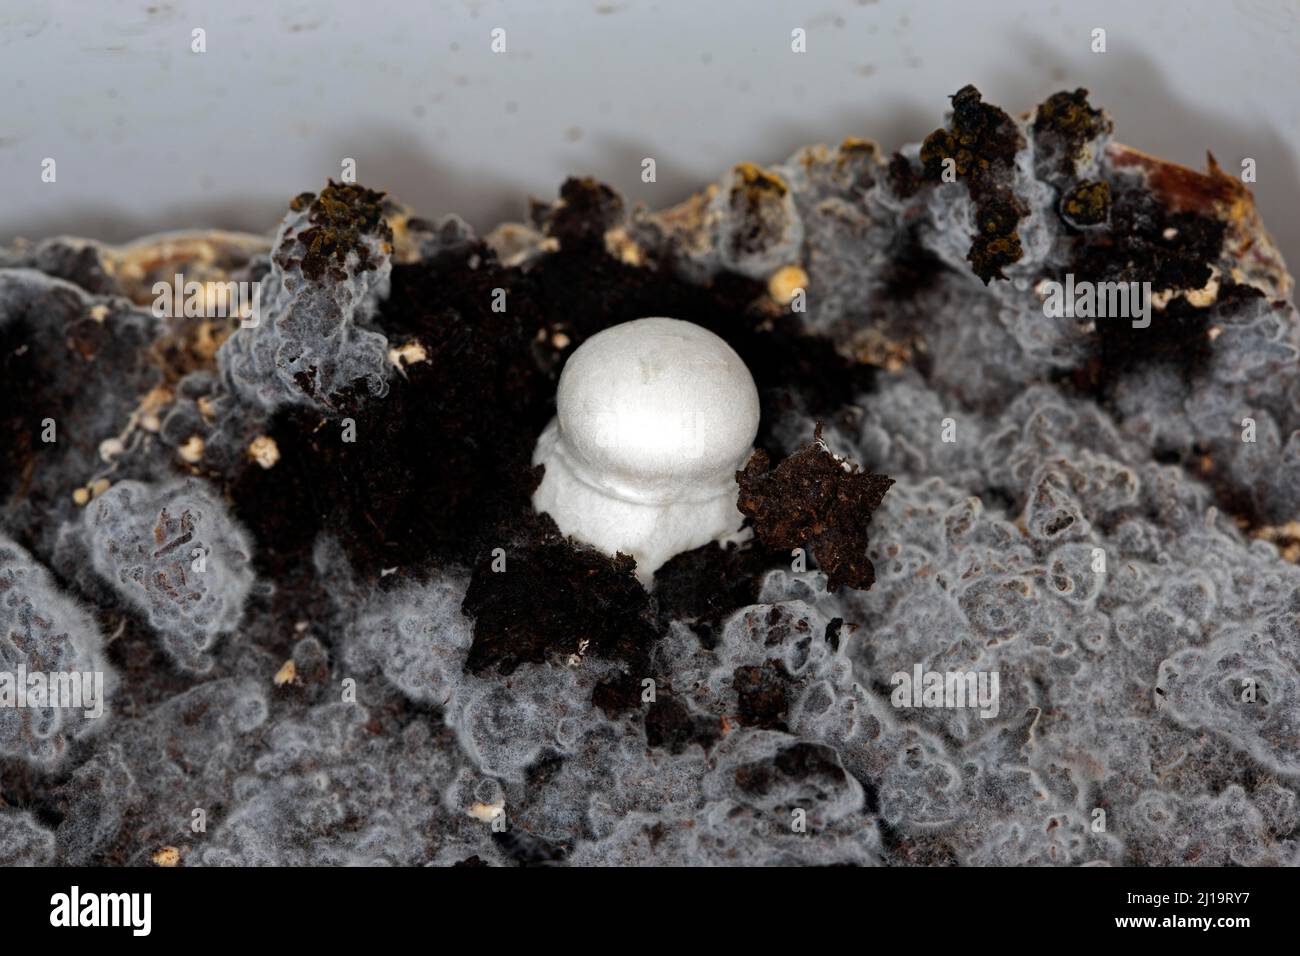 White horse mushroom (Agaricus arvensis) on the mushroom mycelium Stock Photo